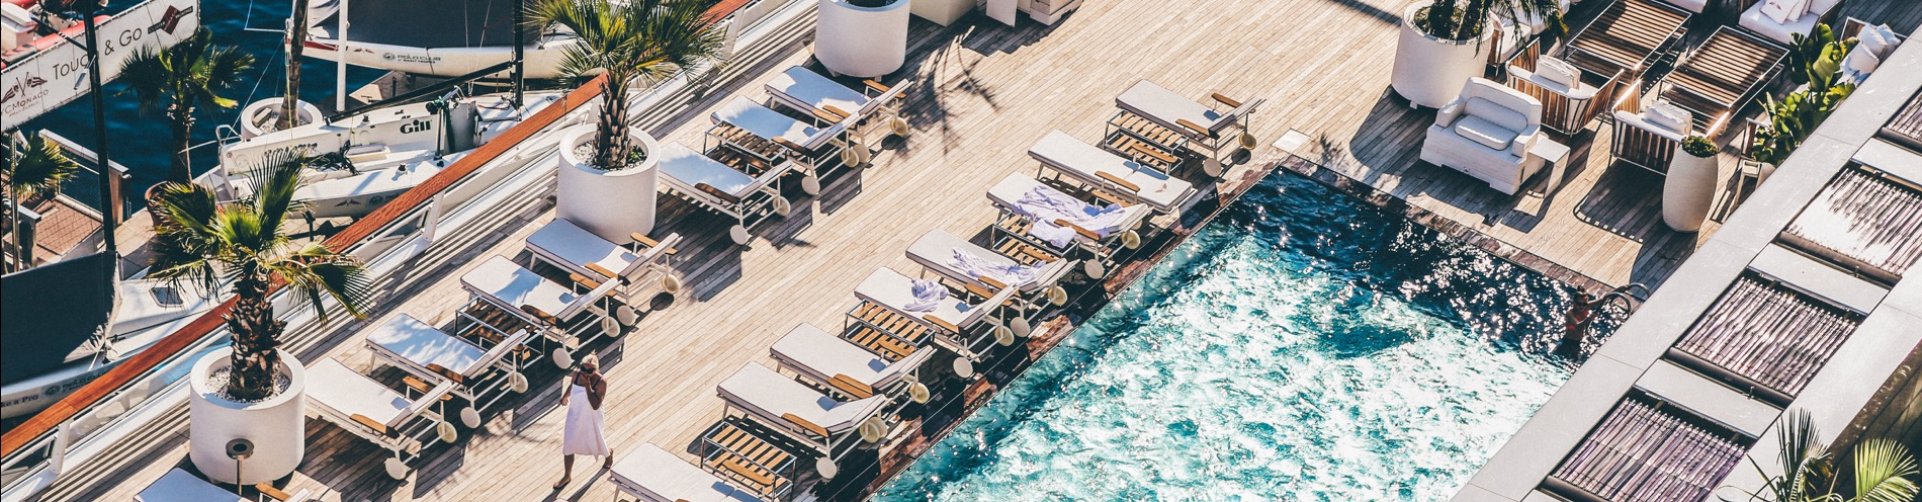 Luxe hotel met zwembad aan de haven van Monaco, Frankrijk